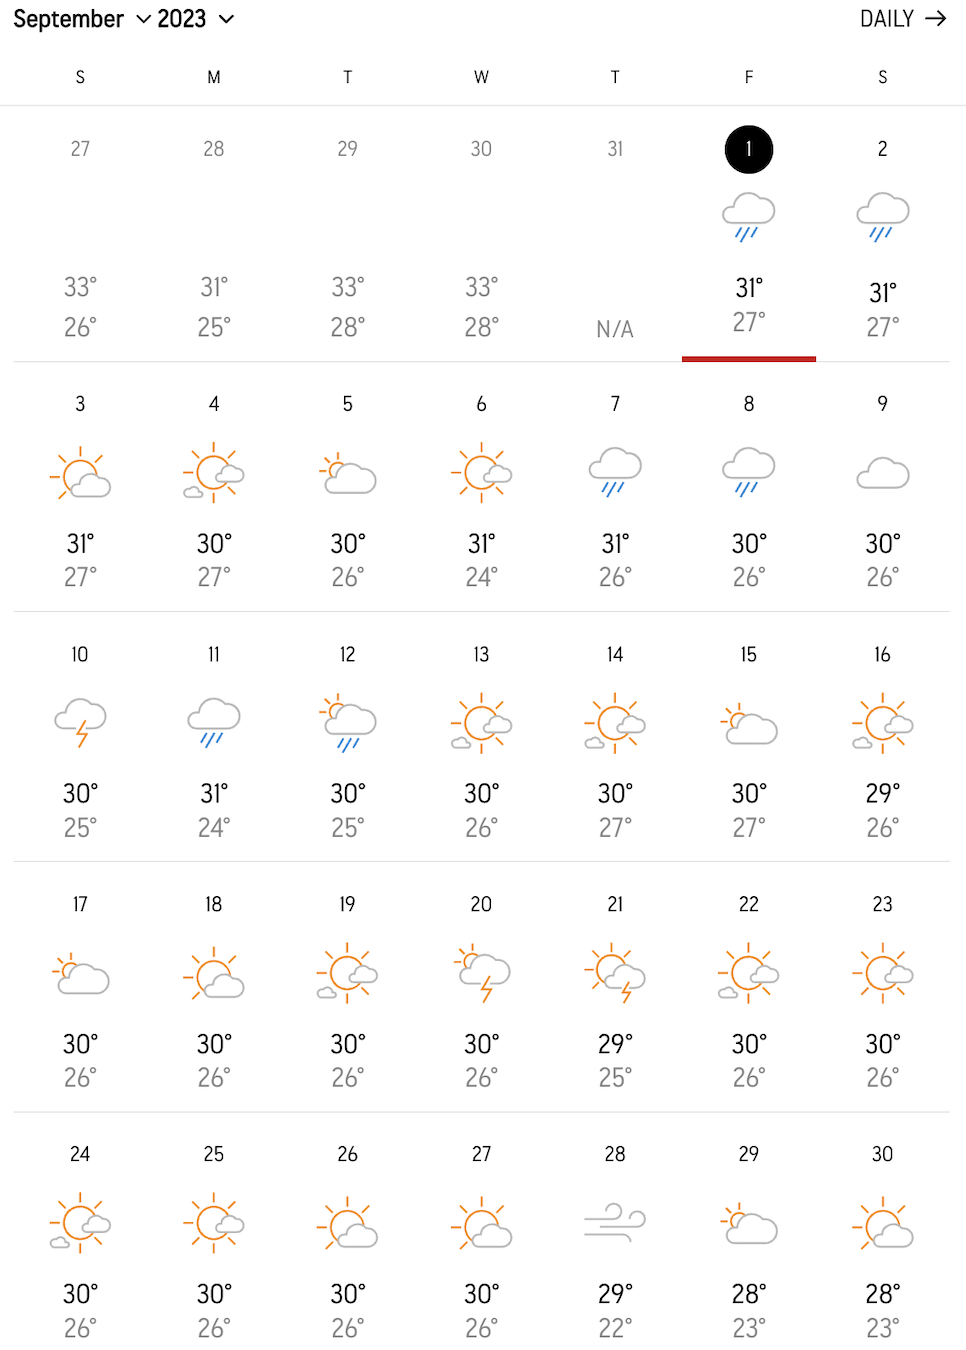 9월 일본 날씨 오사카 도쿄 후쿠오카 홋카이도 오키나와 옷차림